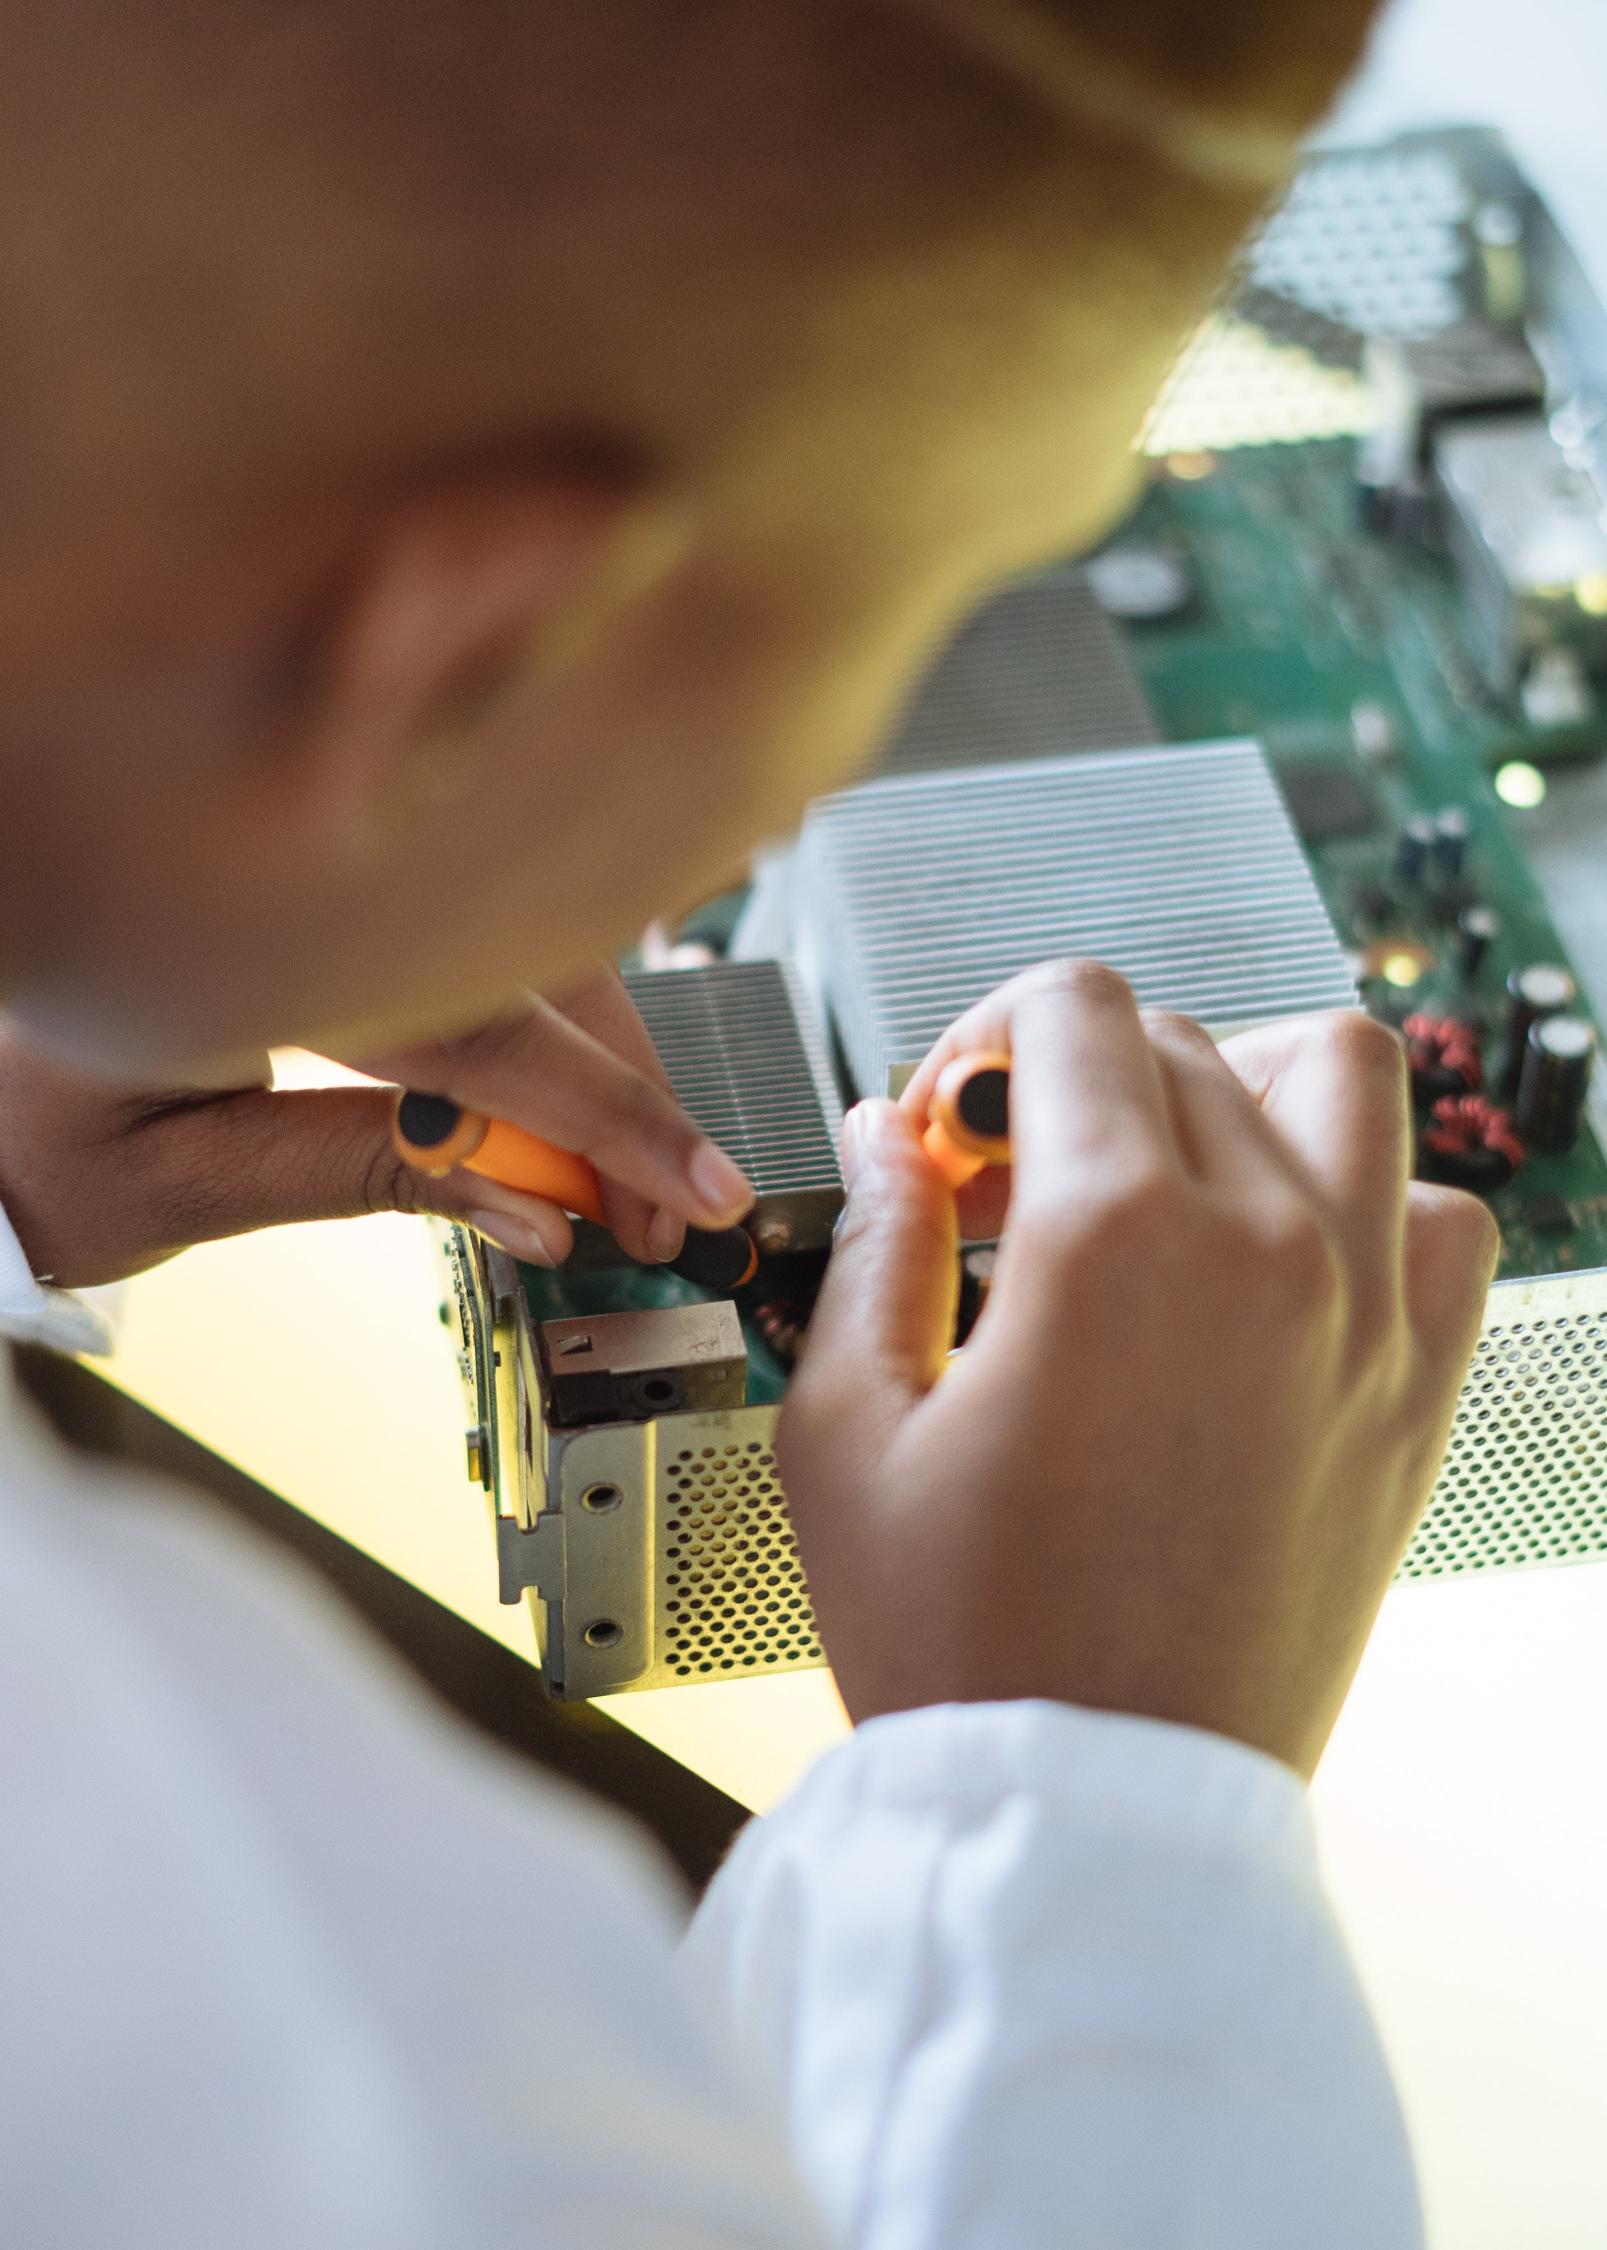 Roboty do inspekcji przemysłowej: efektywność i precyzja w kontroli jakości